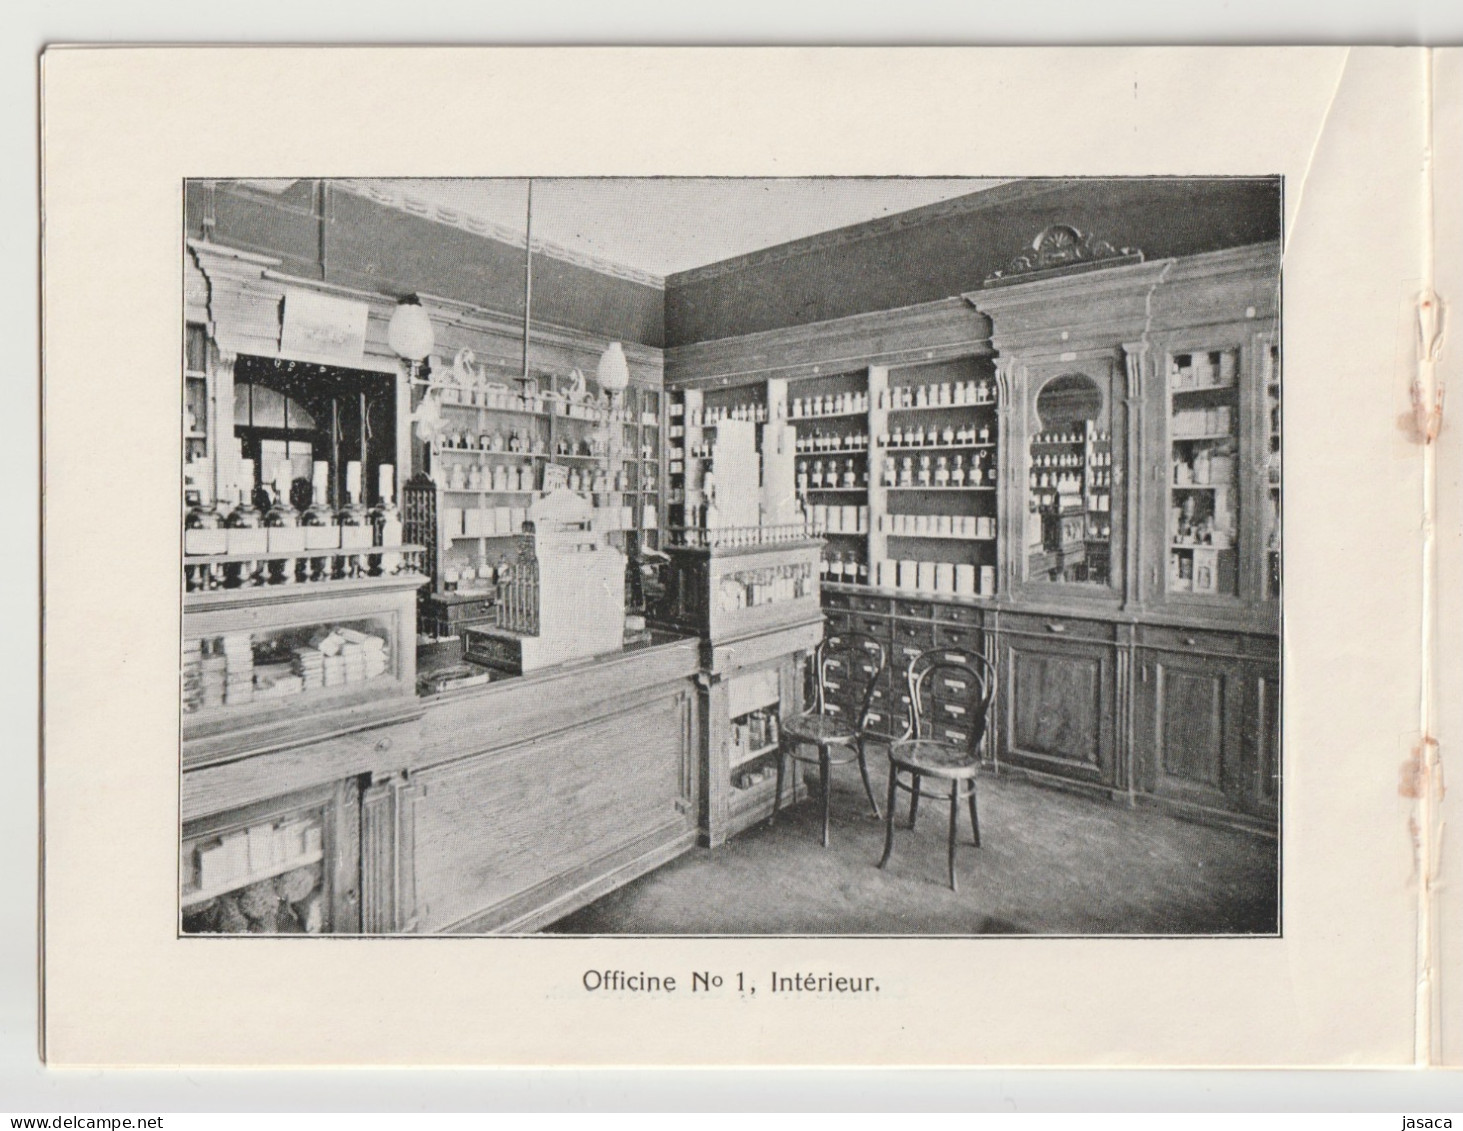 Notice Historique Sur La Soc. Coop. Des Pharmacies Populaires De Lausanne - Lausanne